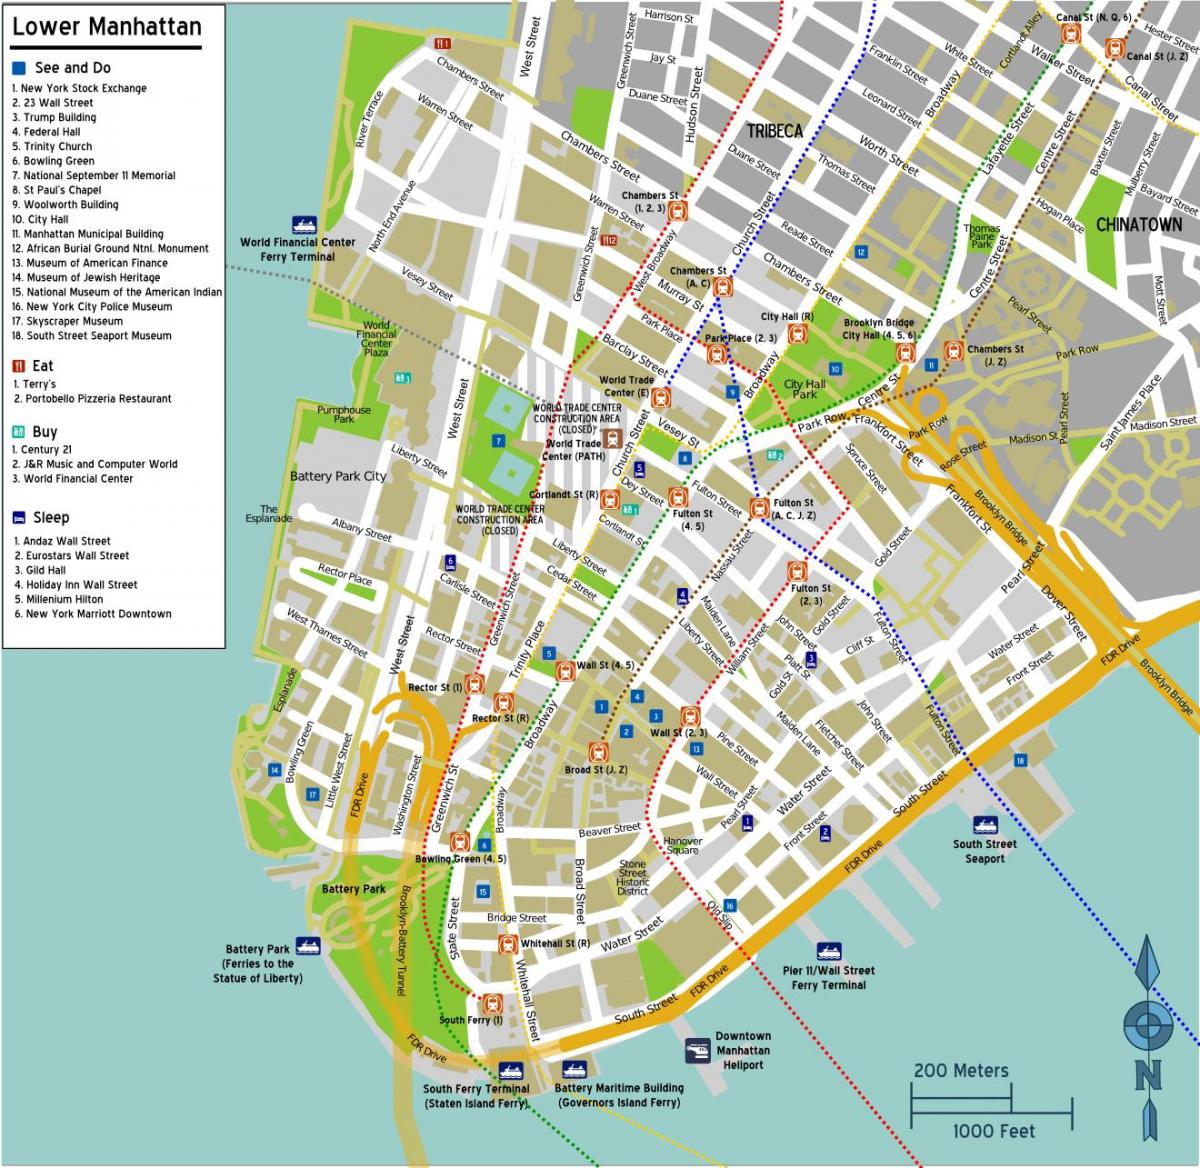 karta donjeg Manhattana s imenima ulica